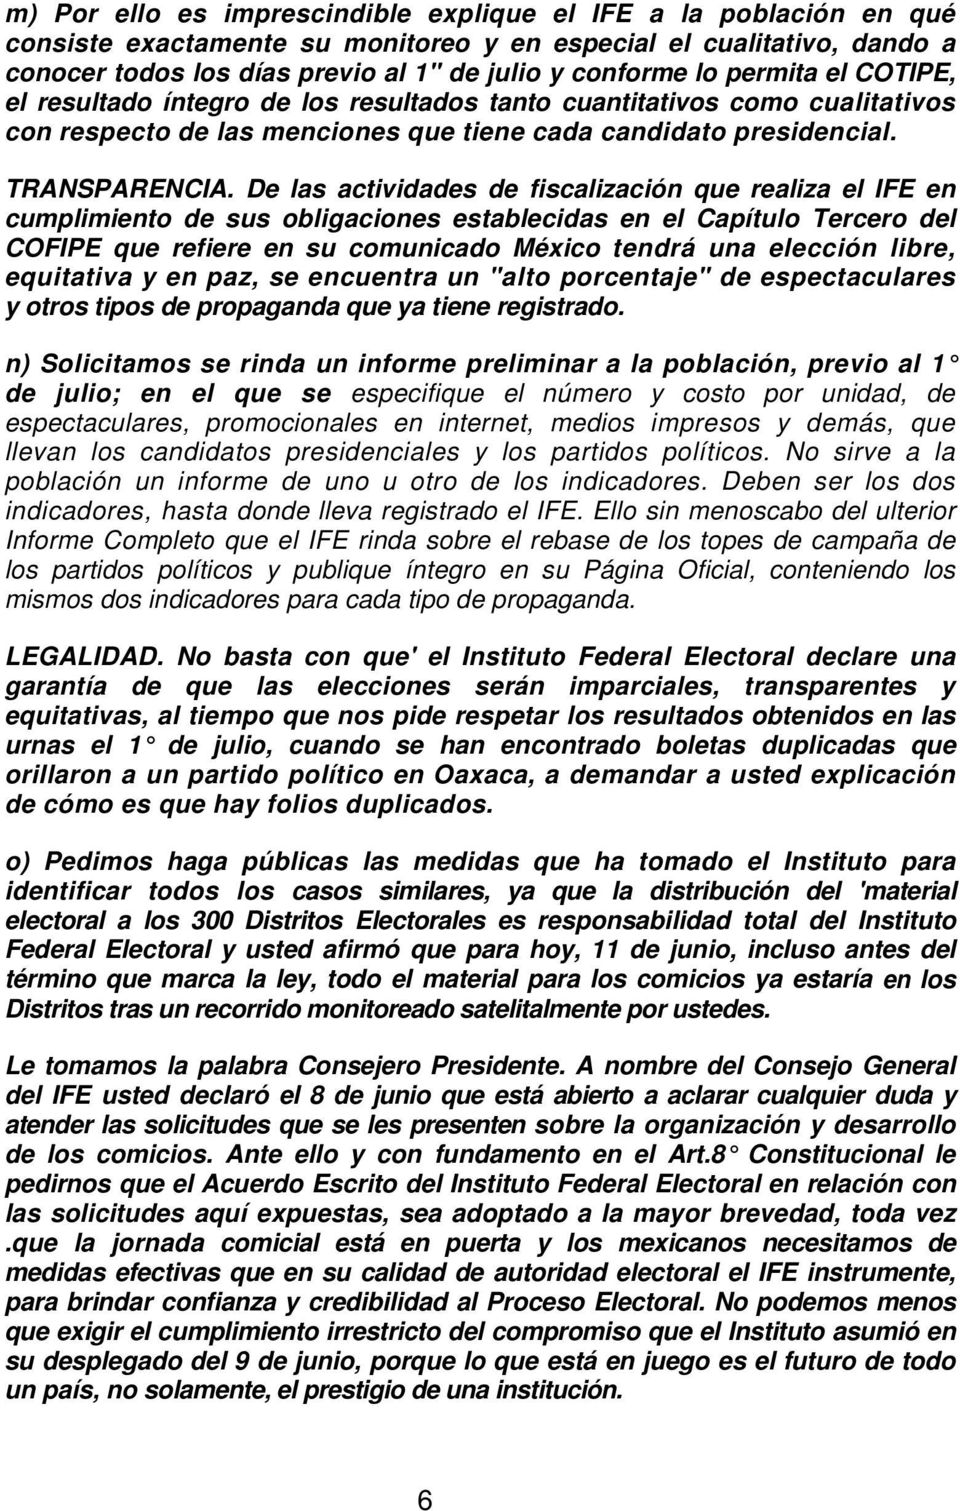 De las actividades de fiscalización que realiza el IFE en cumplimiento de sus obligaciones establecidas en el Capítulo Tercero del COFIPE que refiere en su comunicado México tendrá una elección